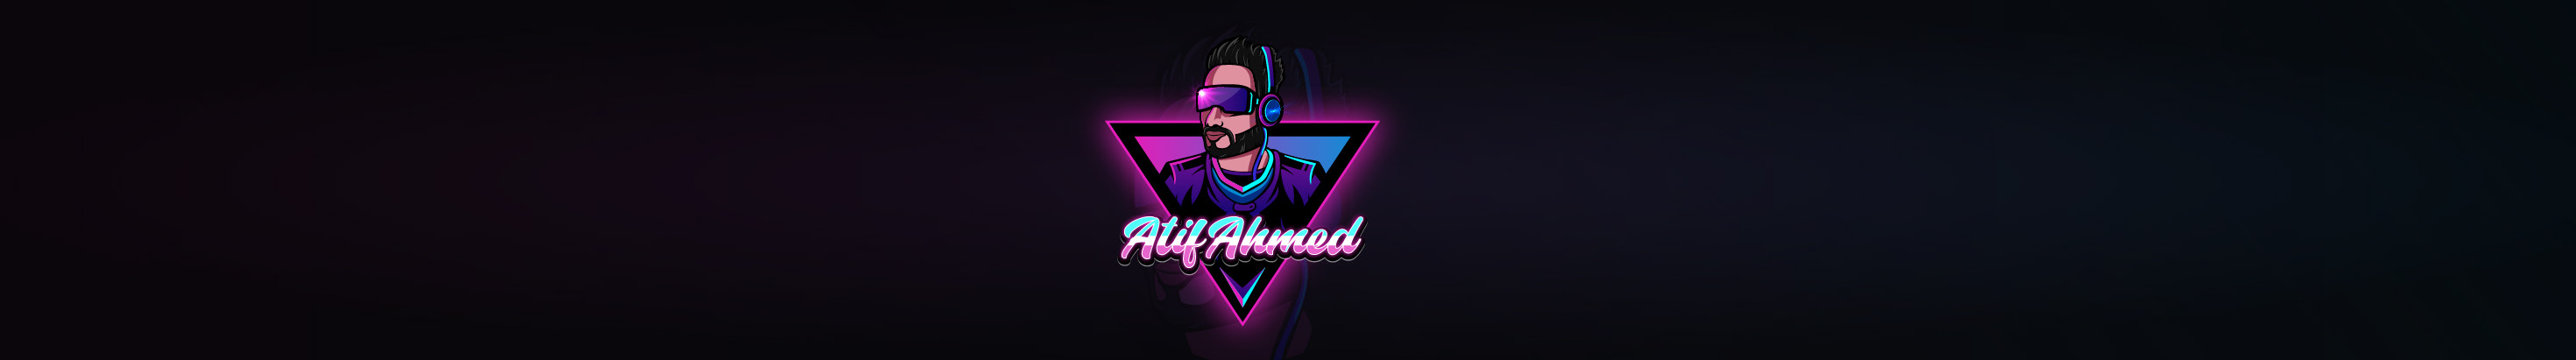 Profil-Banner von Atif Ahmed